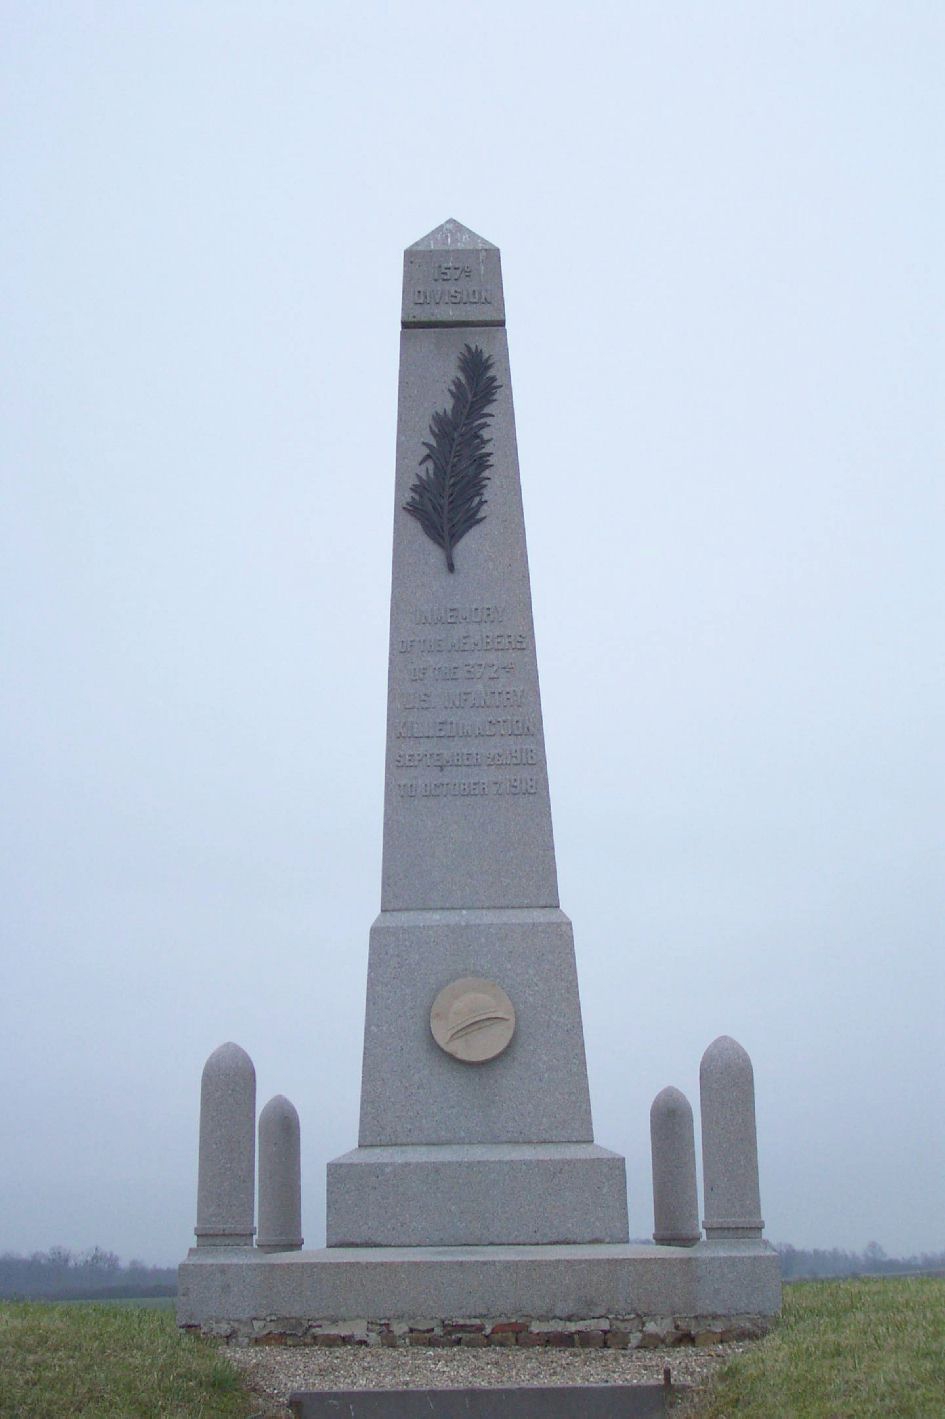 372nd U.S. Infantry Memorial